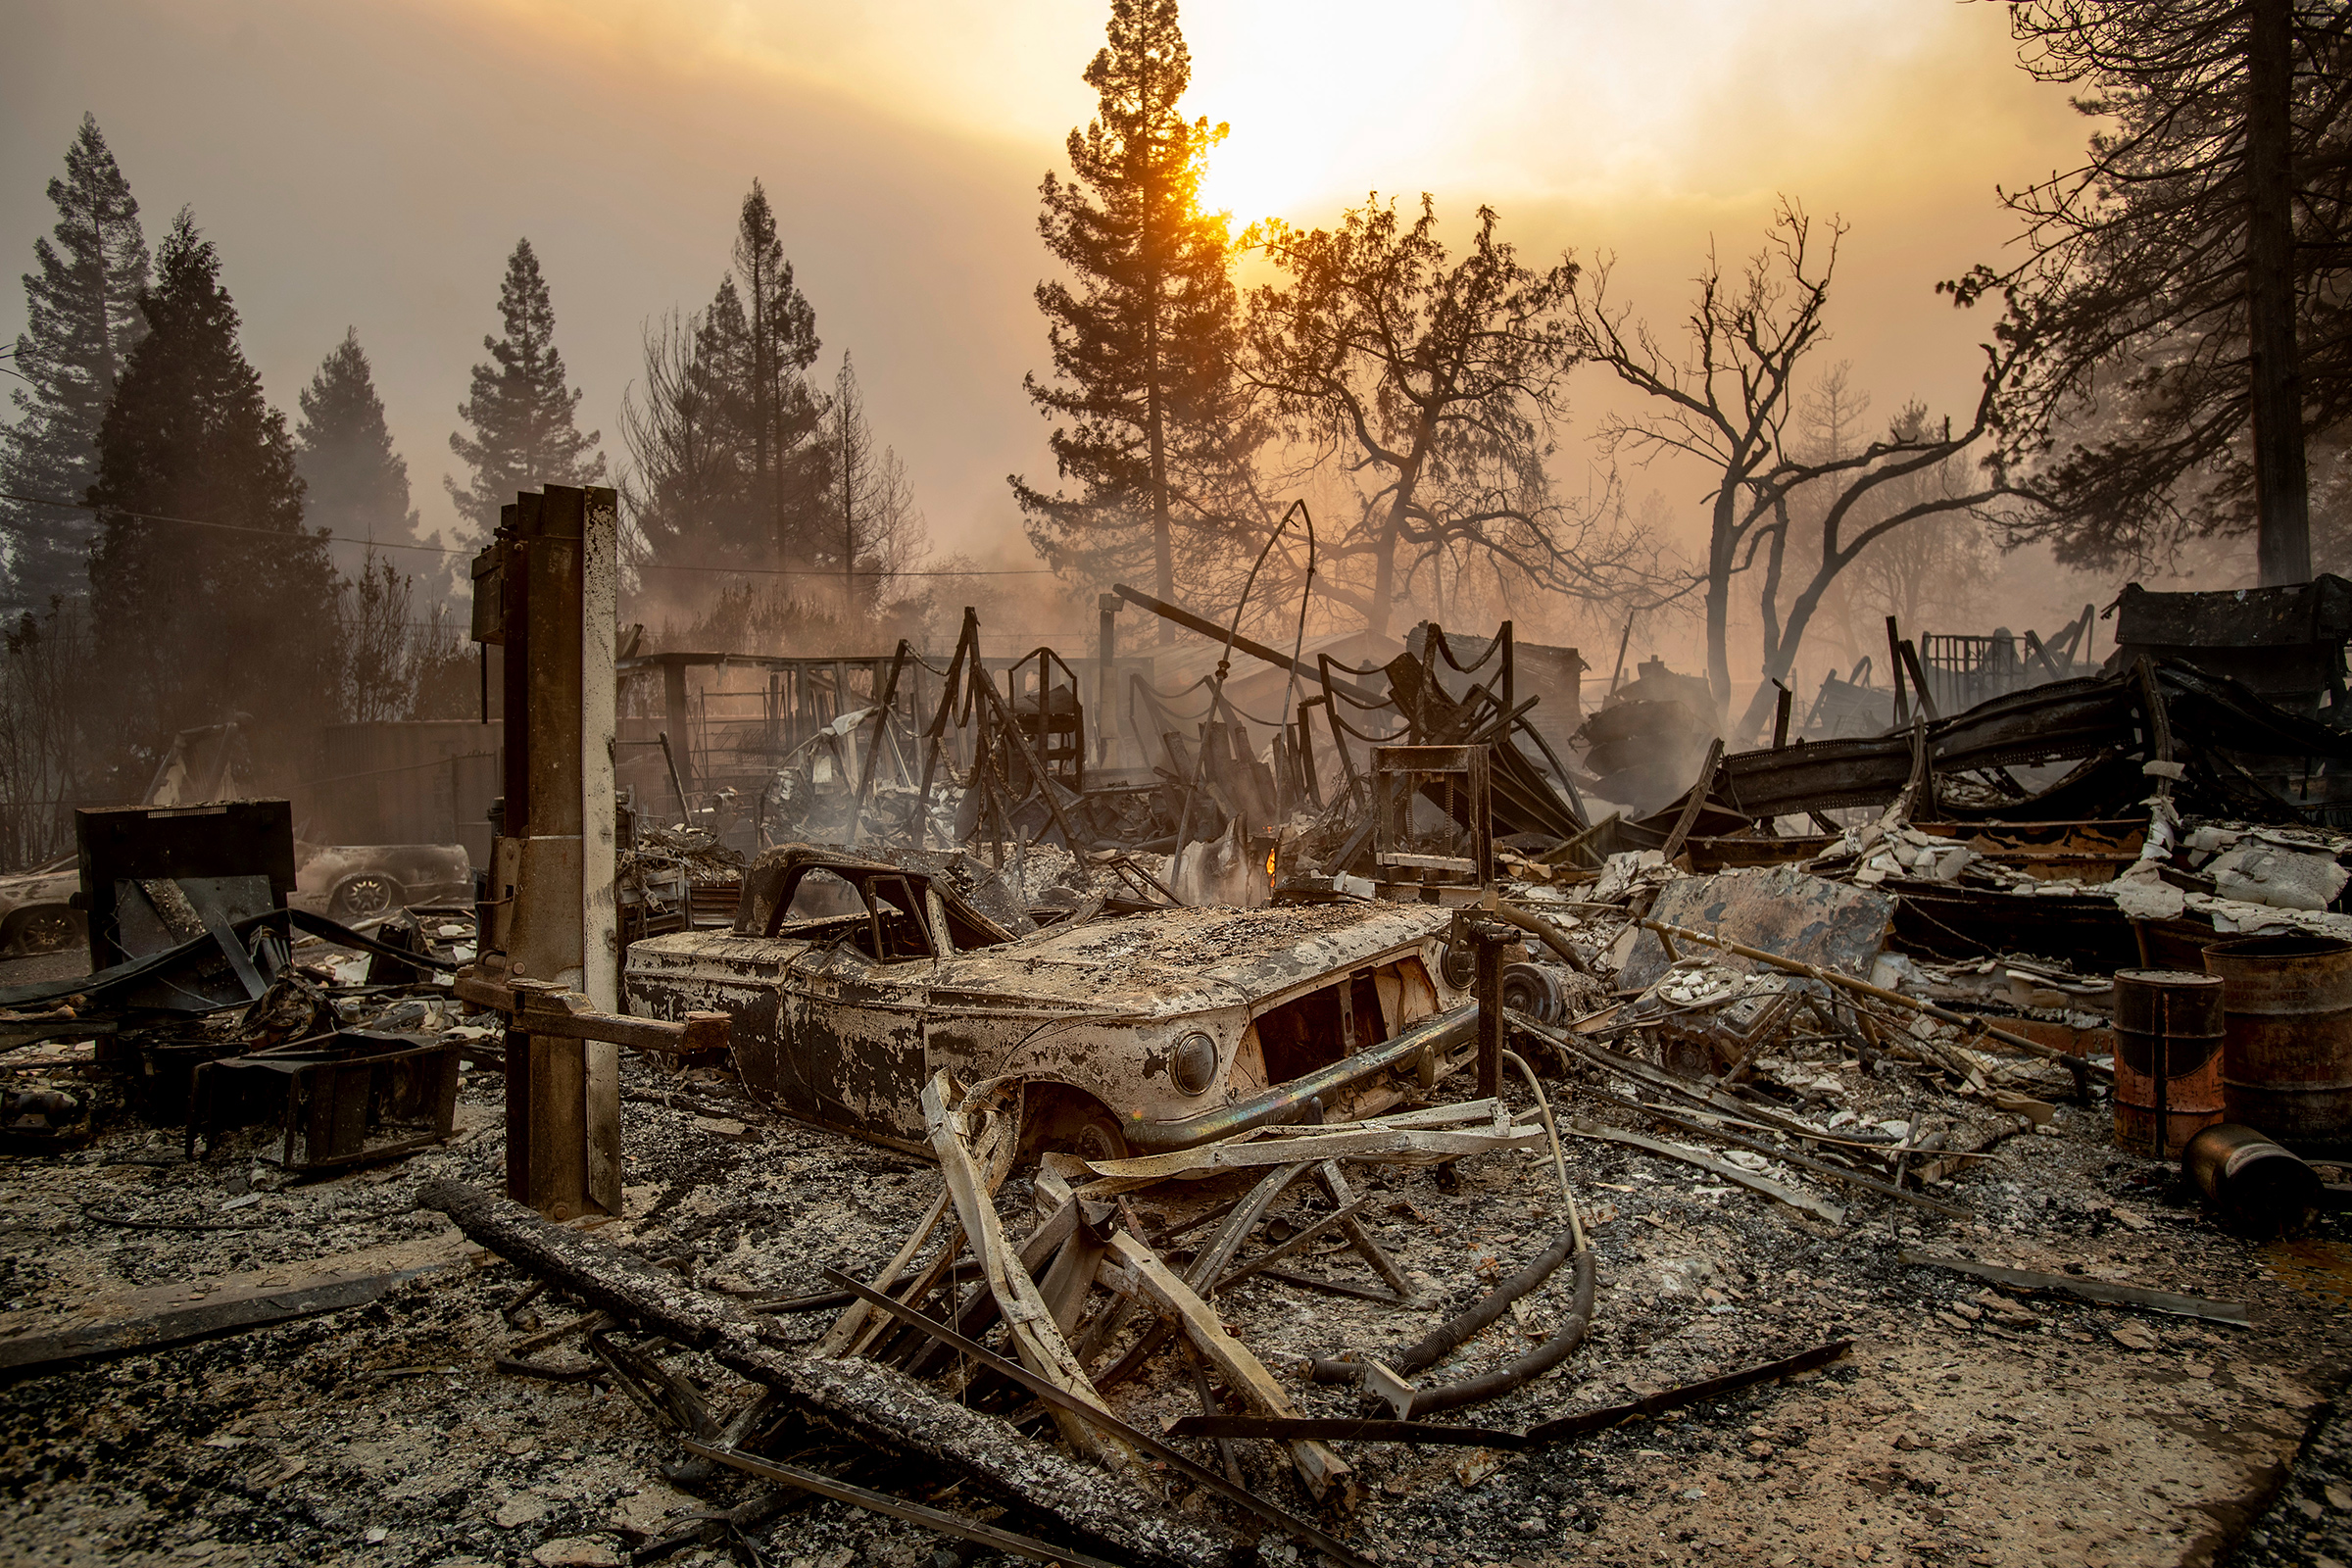 Пожары в Калифорнии начались 8 ноября утром. Первый очаг&nbsp;находился в 175&nbsp;км от Сан-Франциско, рядом с горами Сьерра-Невада